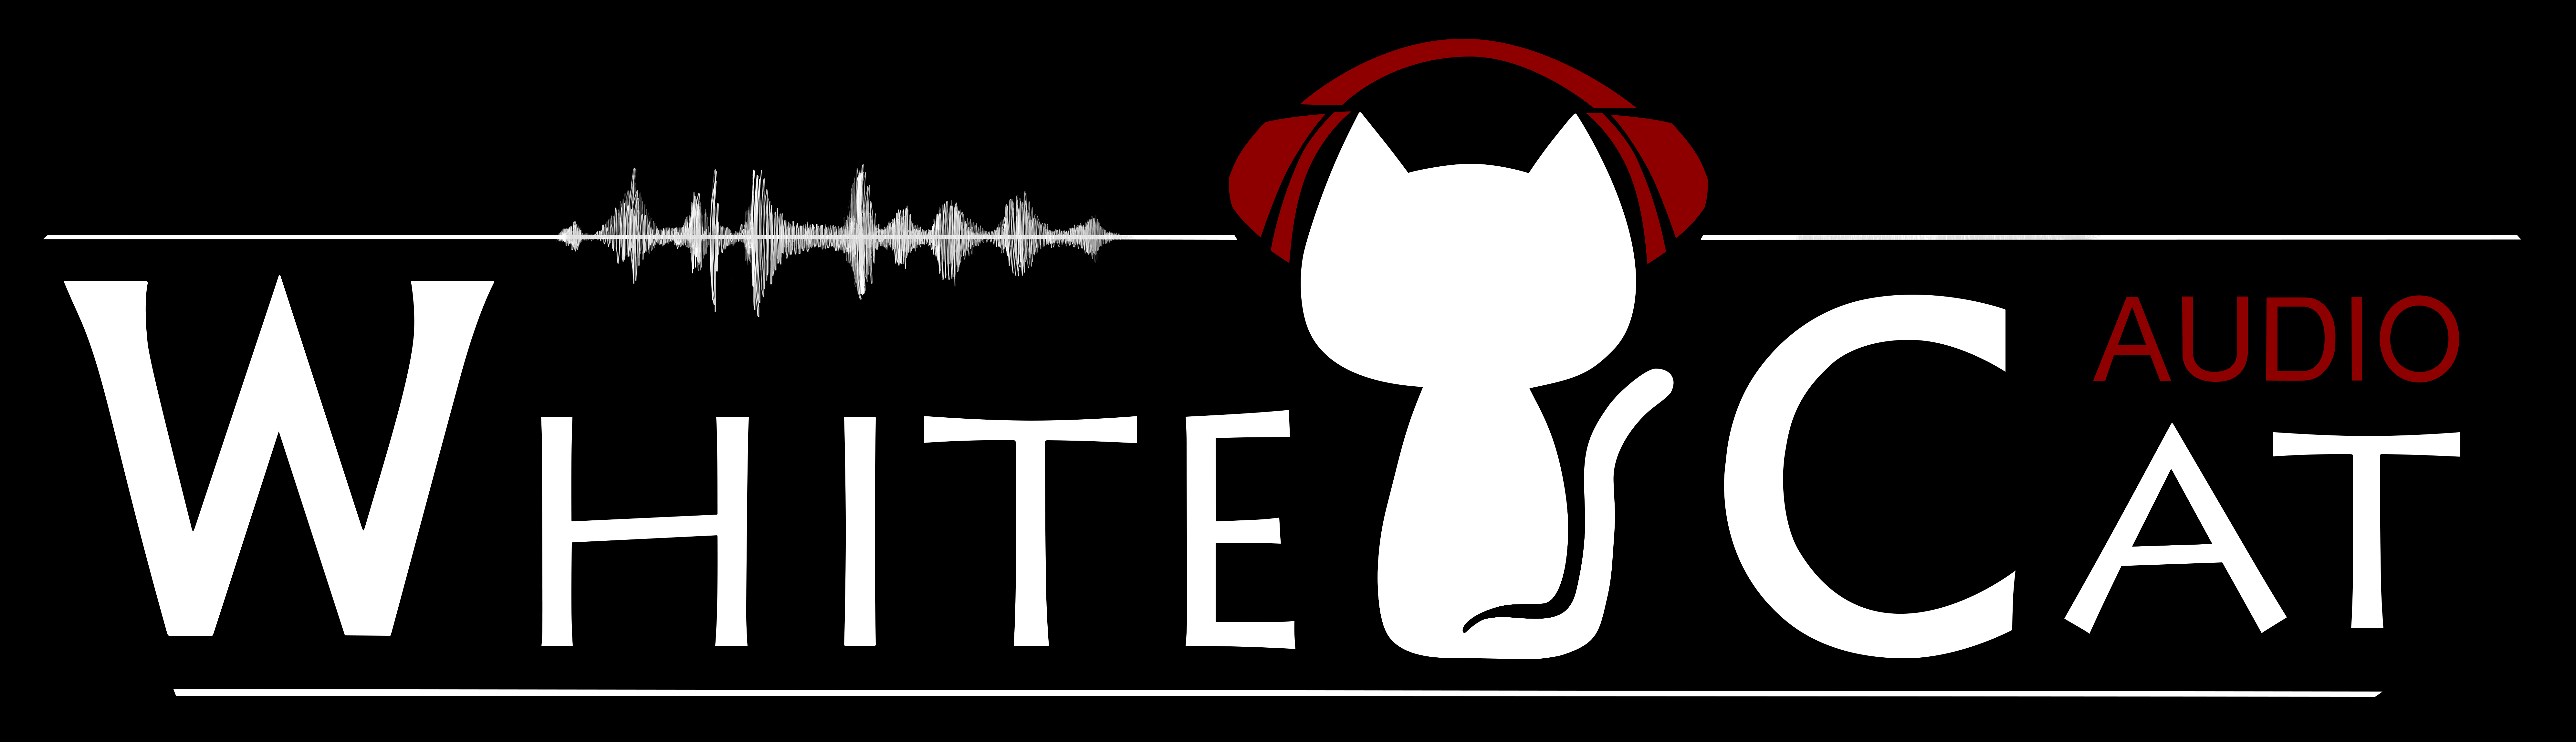 White Cat Audio